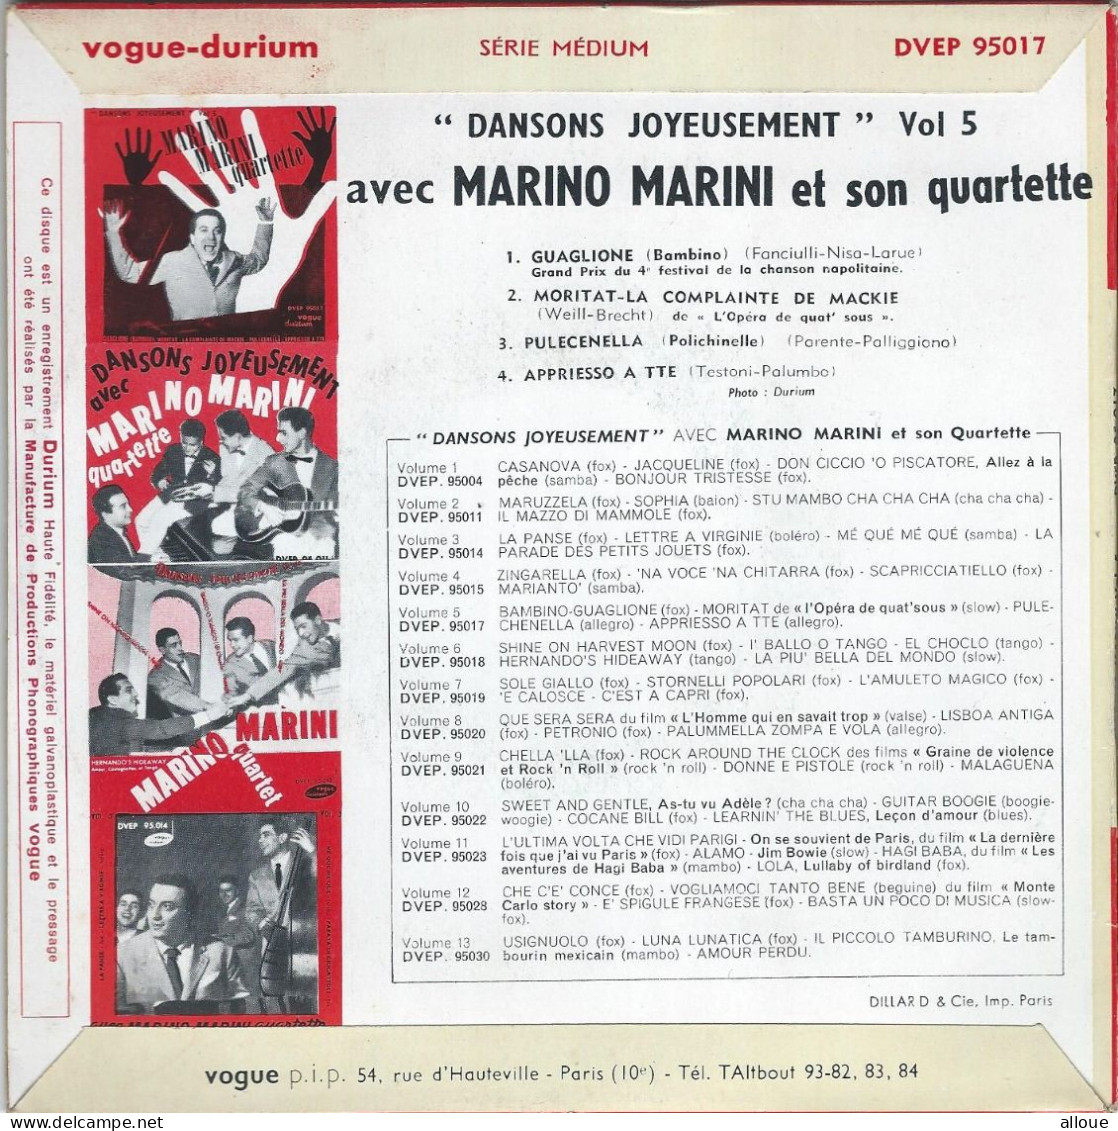 MARINO MARINI QUARTETTE - FR EP - GUAGLIONE (BAMBINO) + 3 - Other - Italian Music